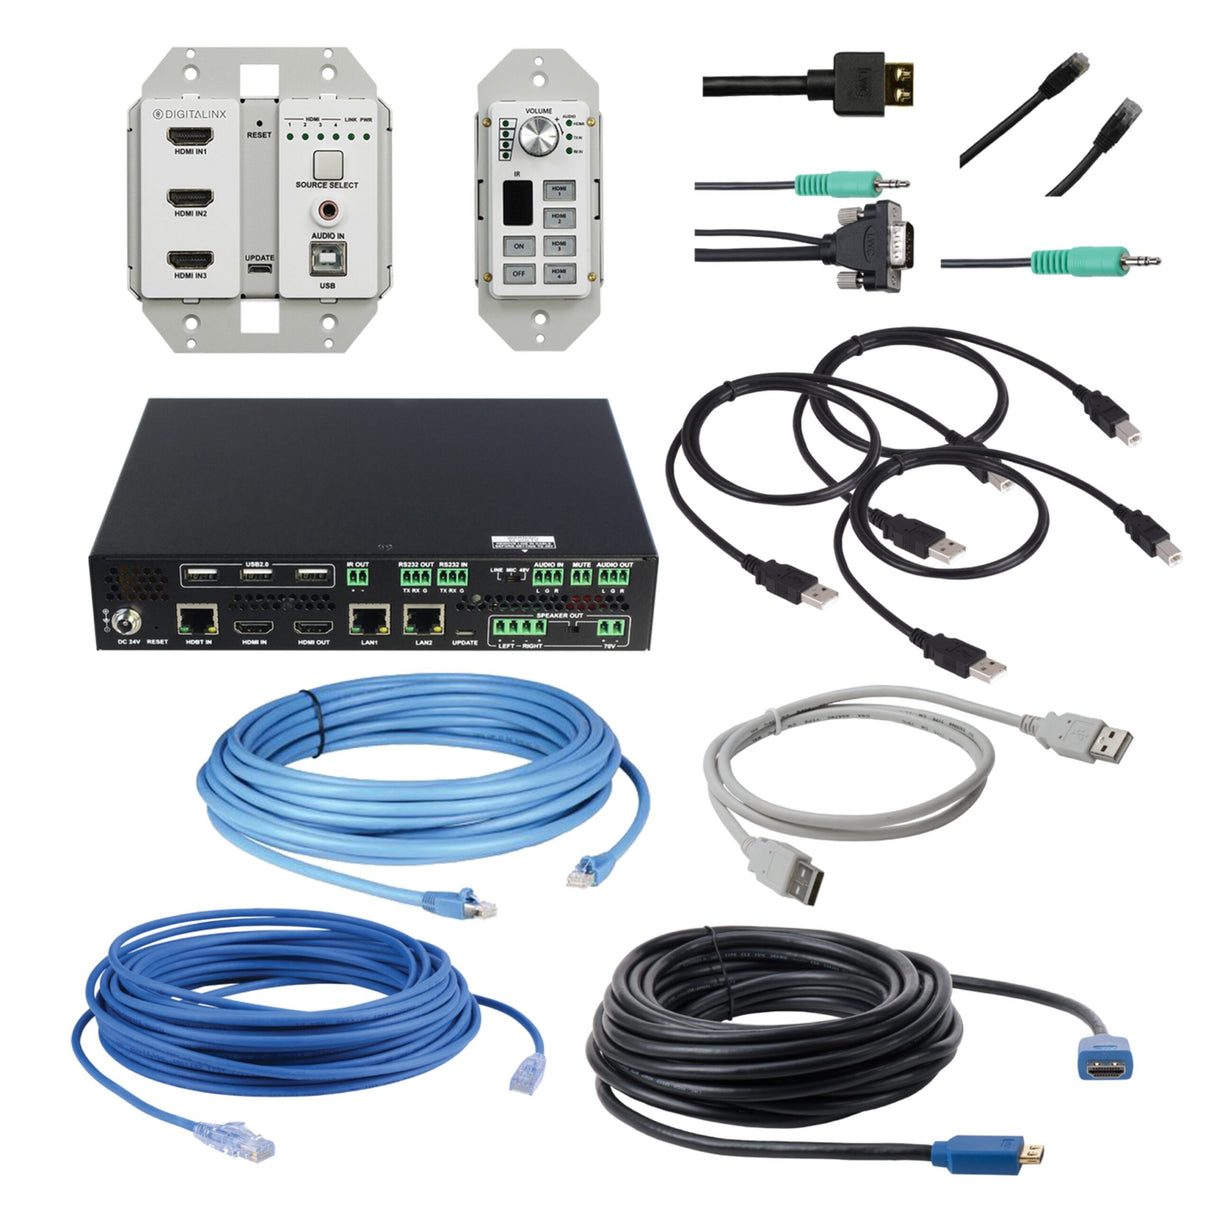 DigitaLinx EDU-4HUAC-4K-035 ARK Series 3 Piece HDMI 4x and USB Room Kit, 35 Foot